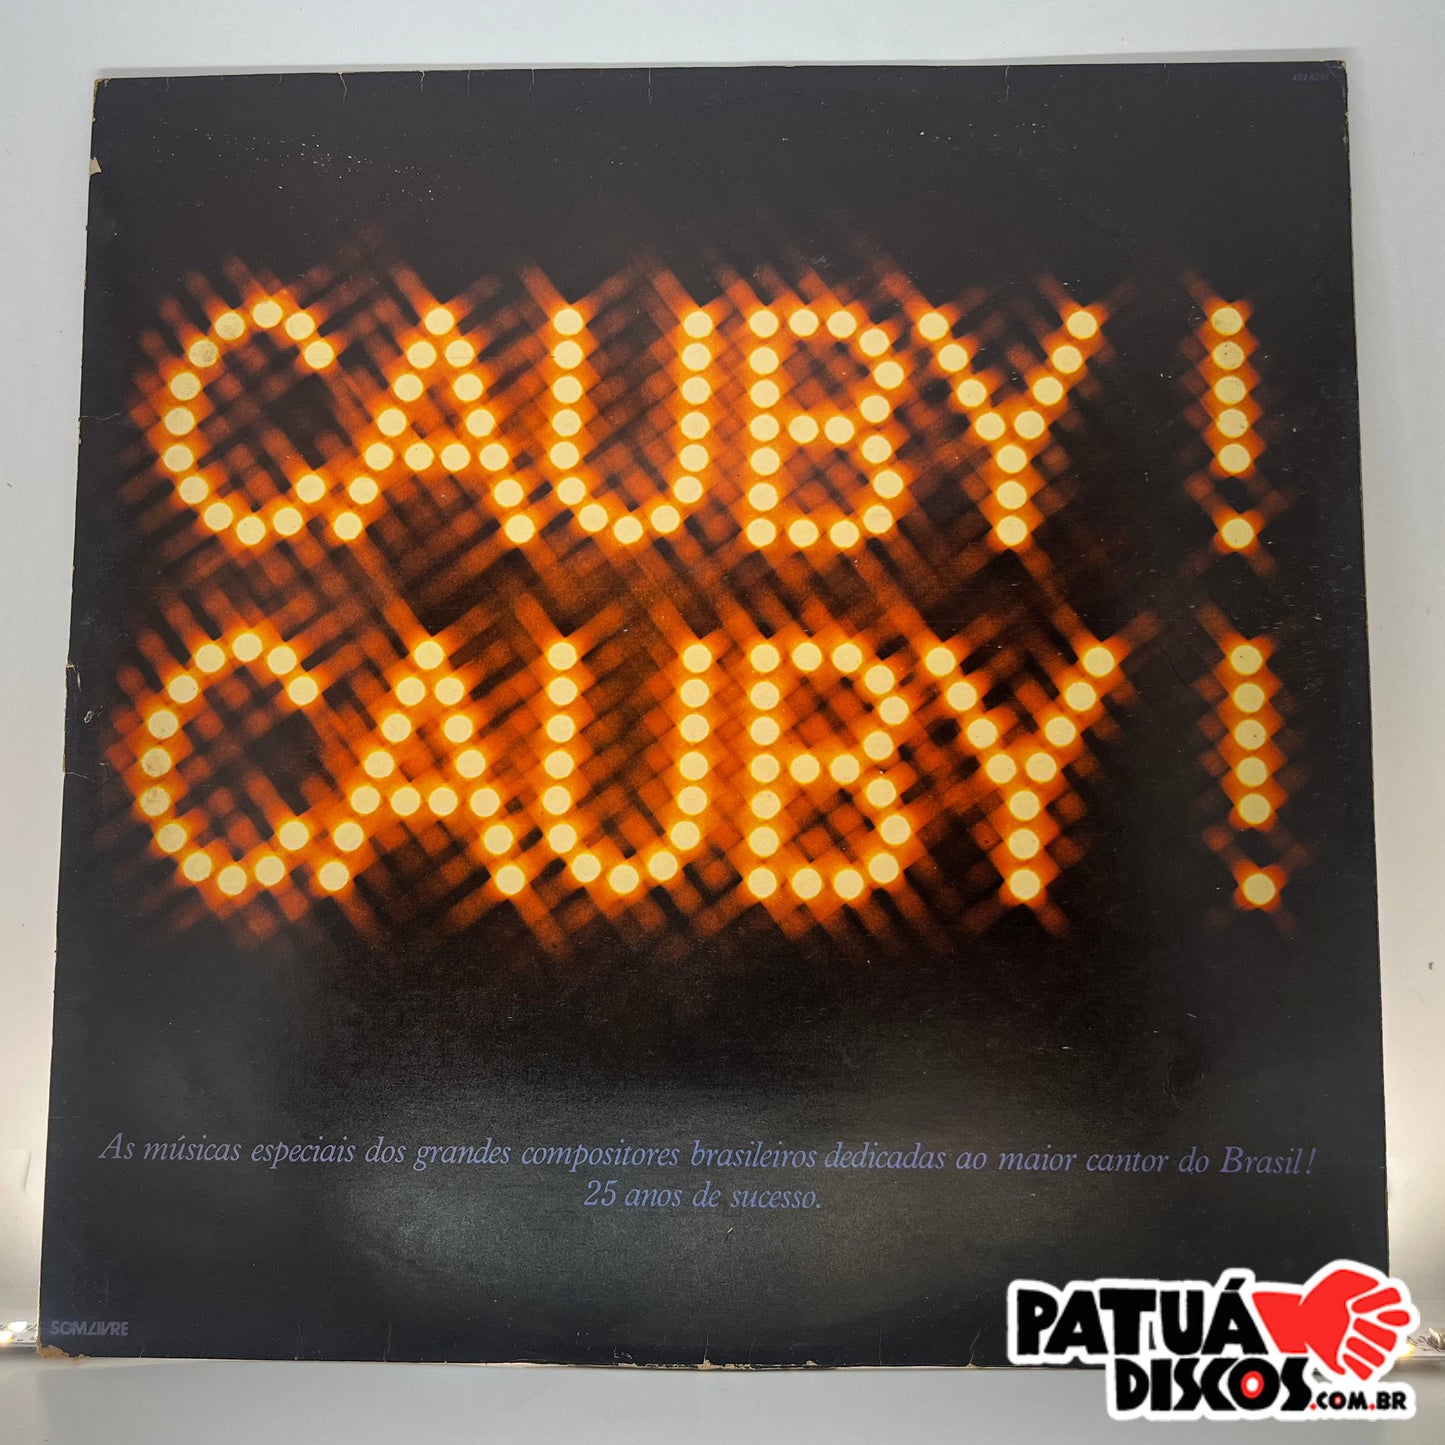 Cauby Peixoto - Cauby! Cauby! - LP